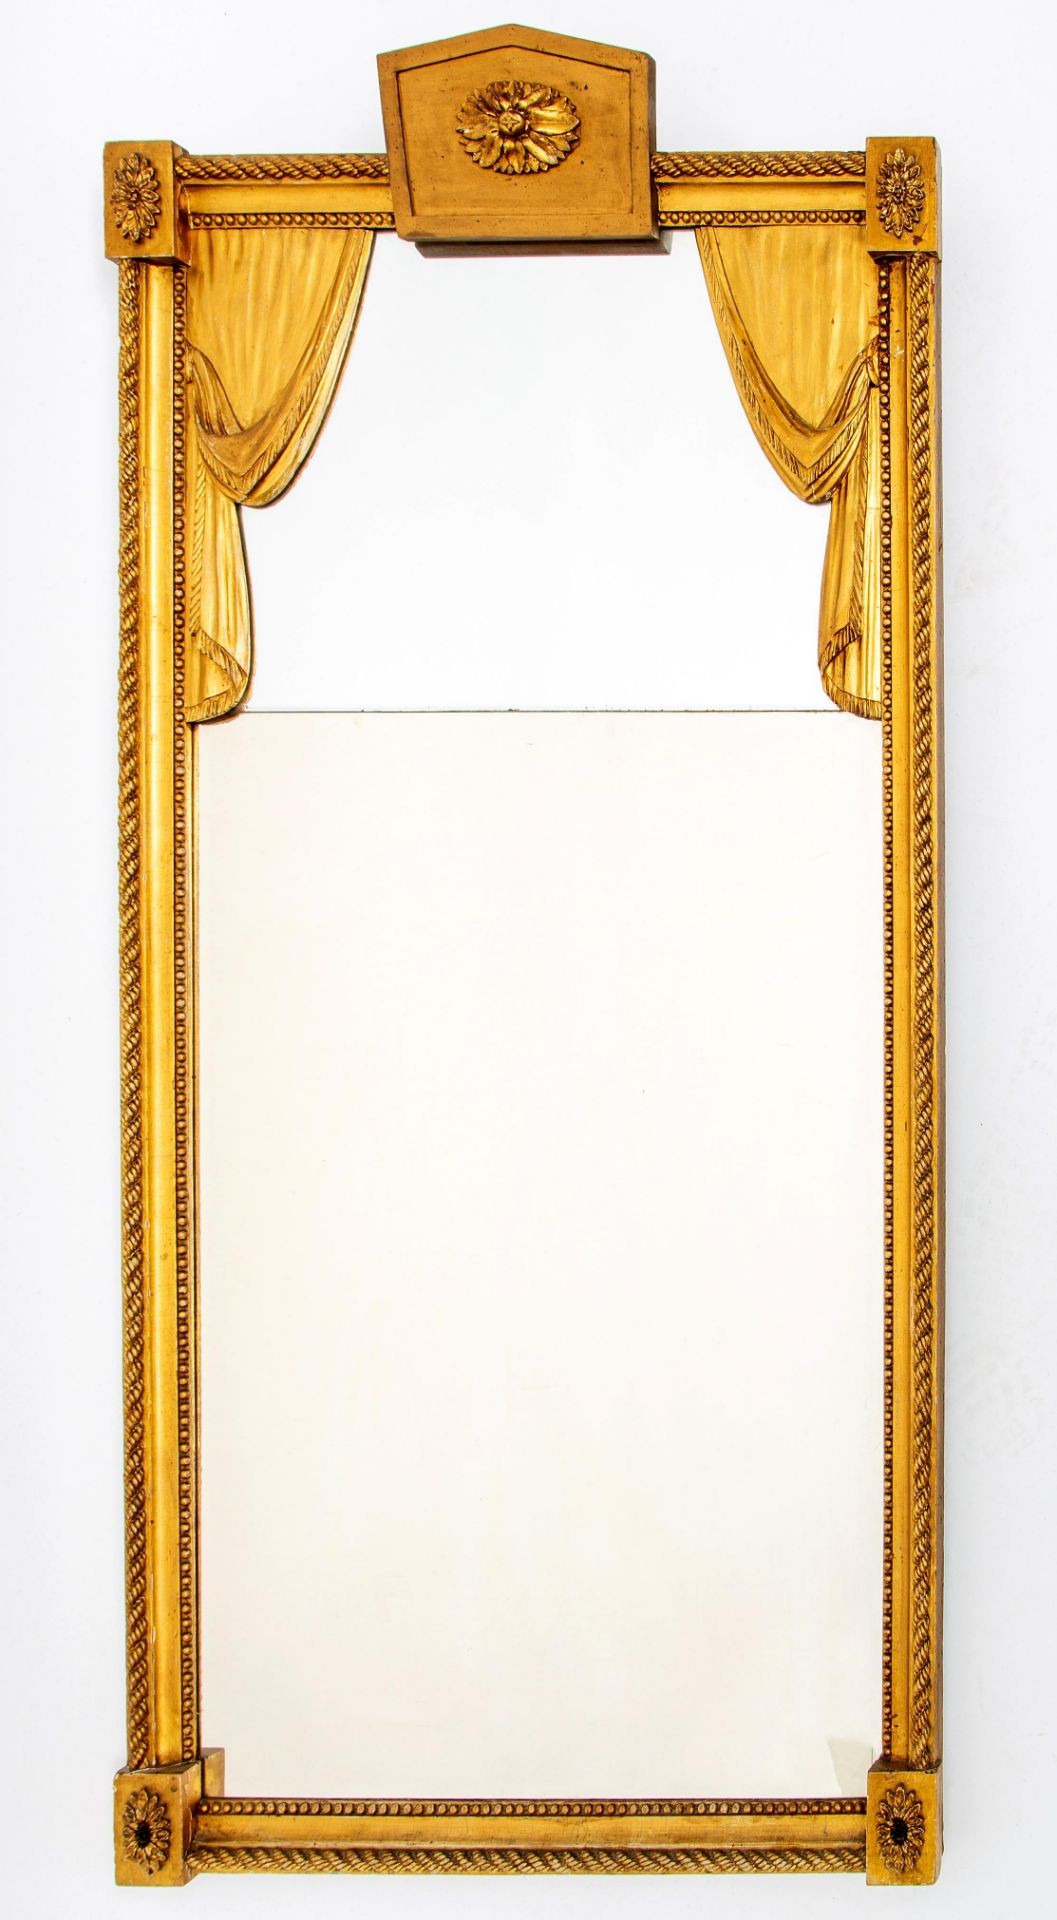 Holland, spiegel in vergulde lijst, Louis XVI, ca. 1790,